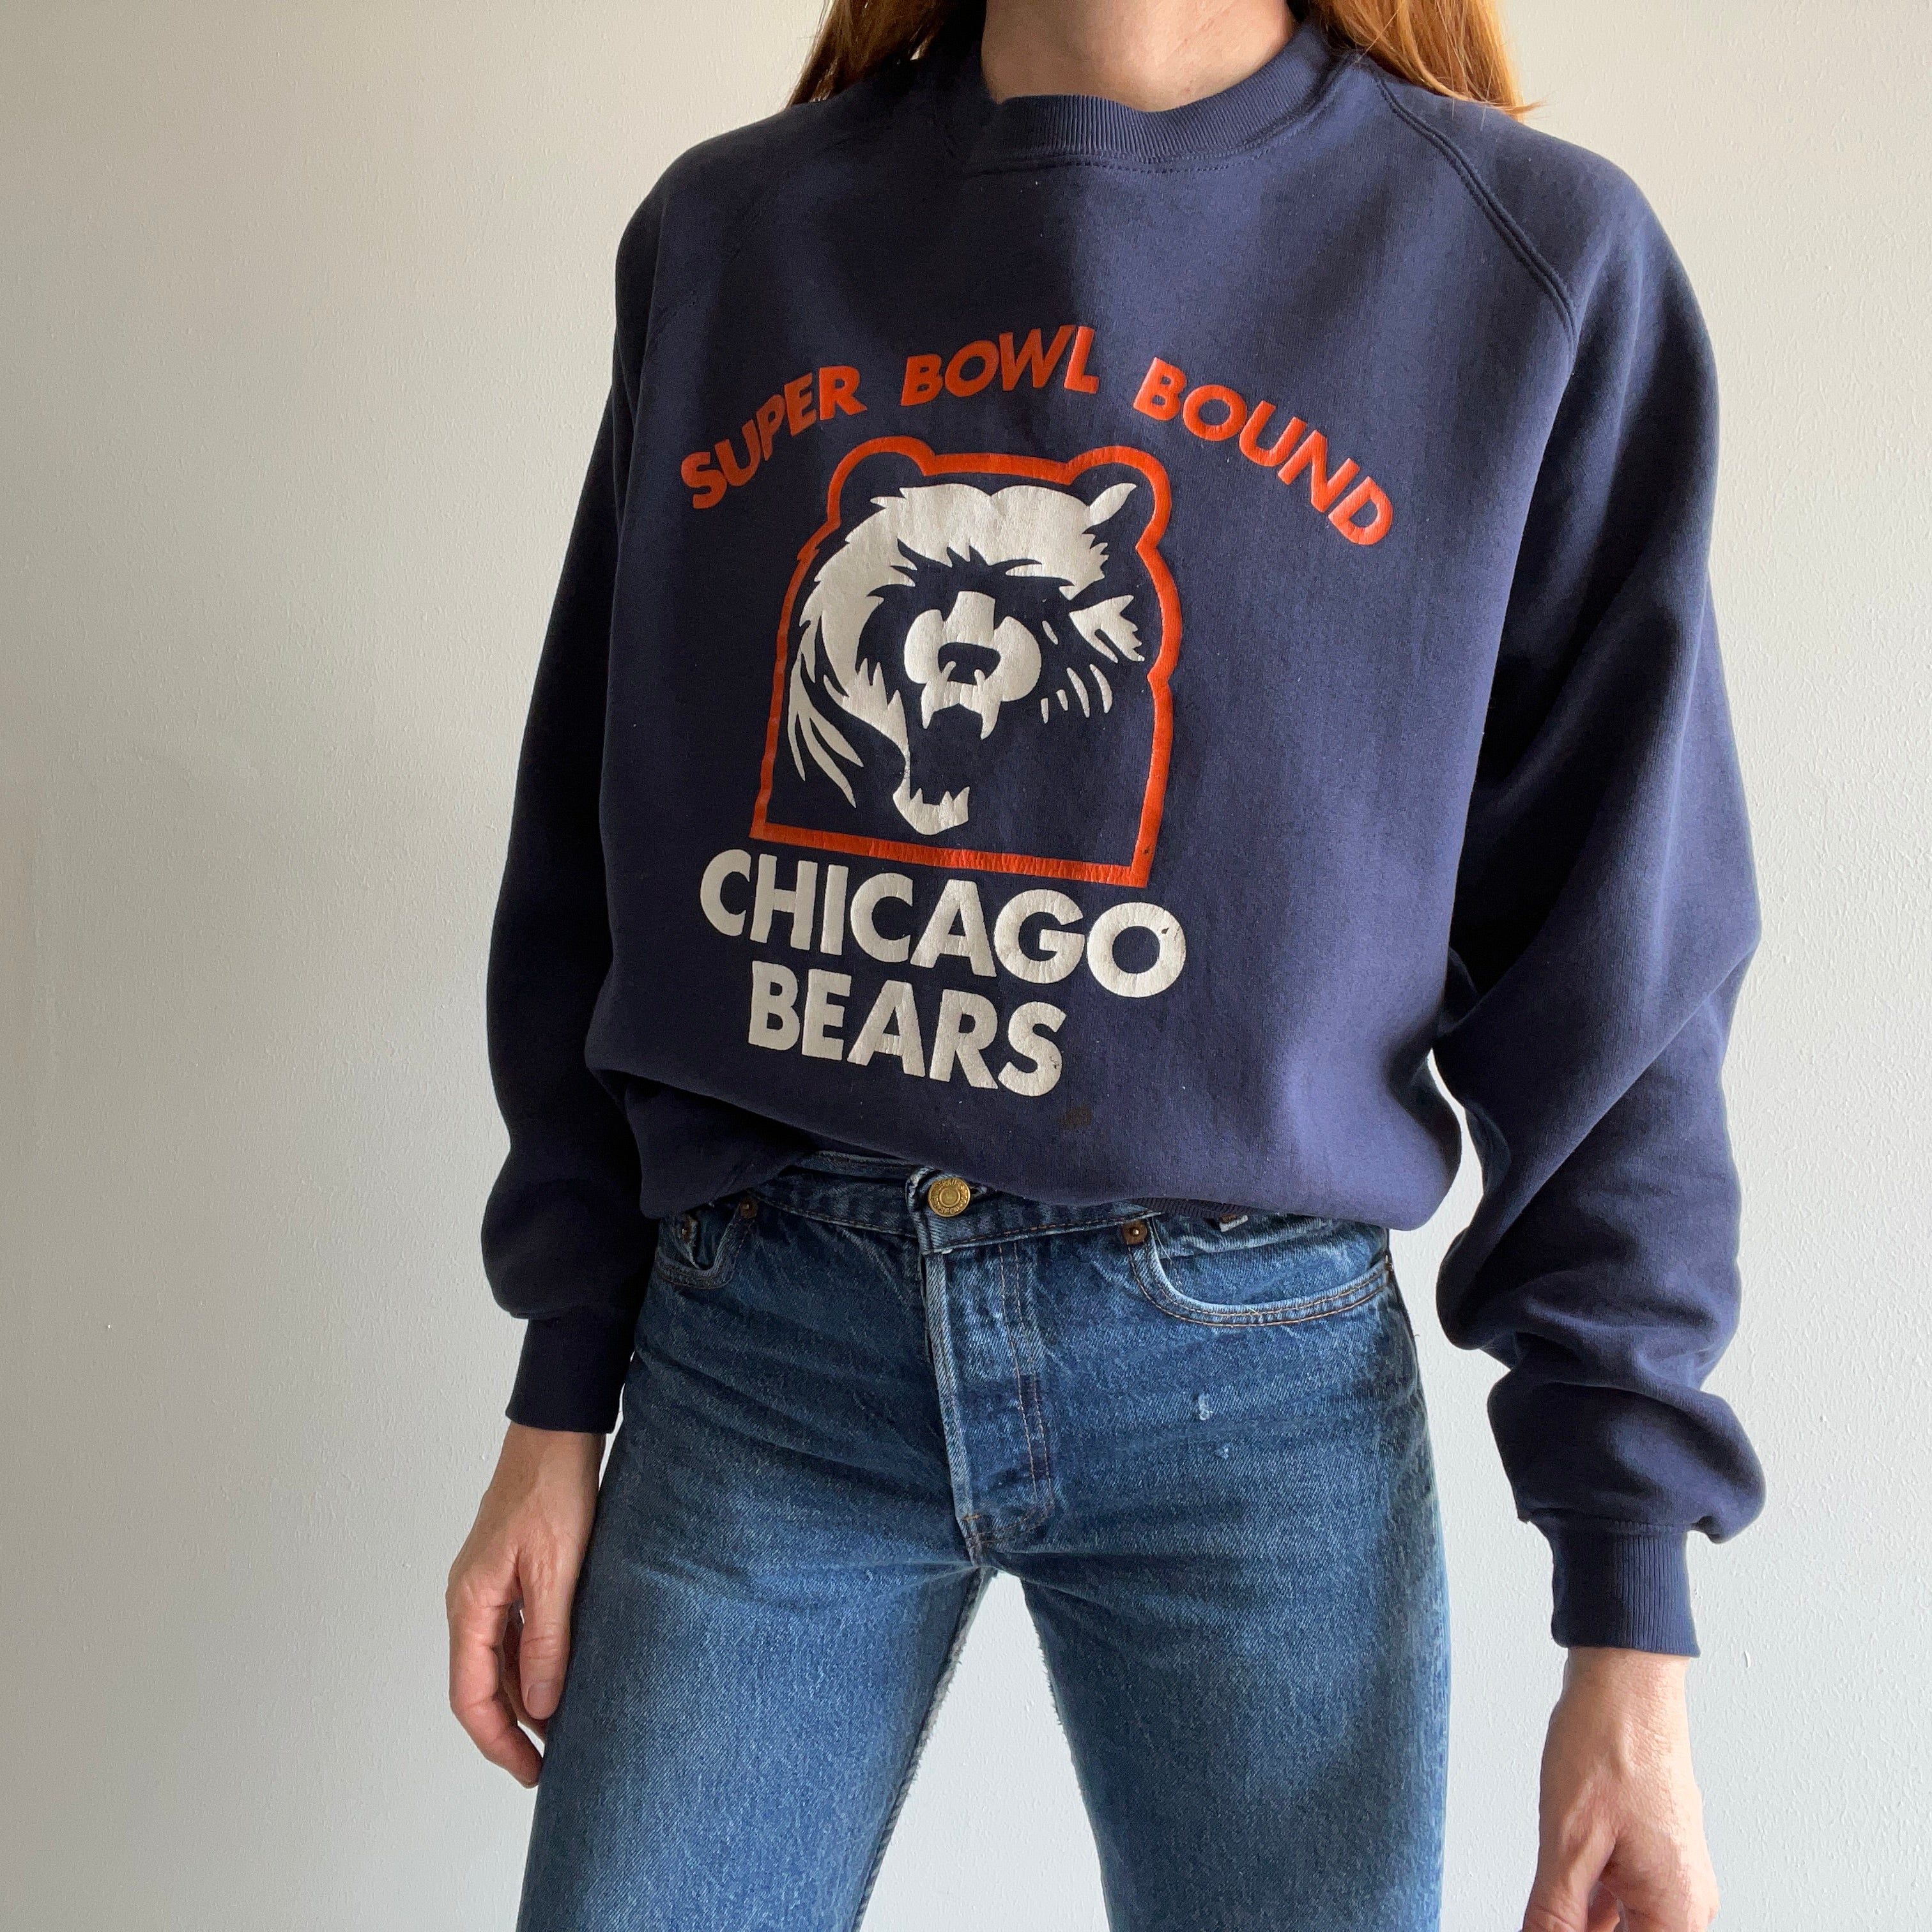 Unique 85 Chicago Bears T-shirt 